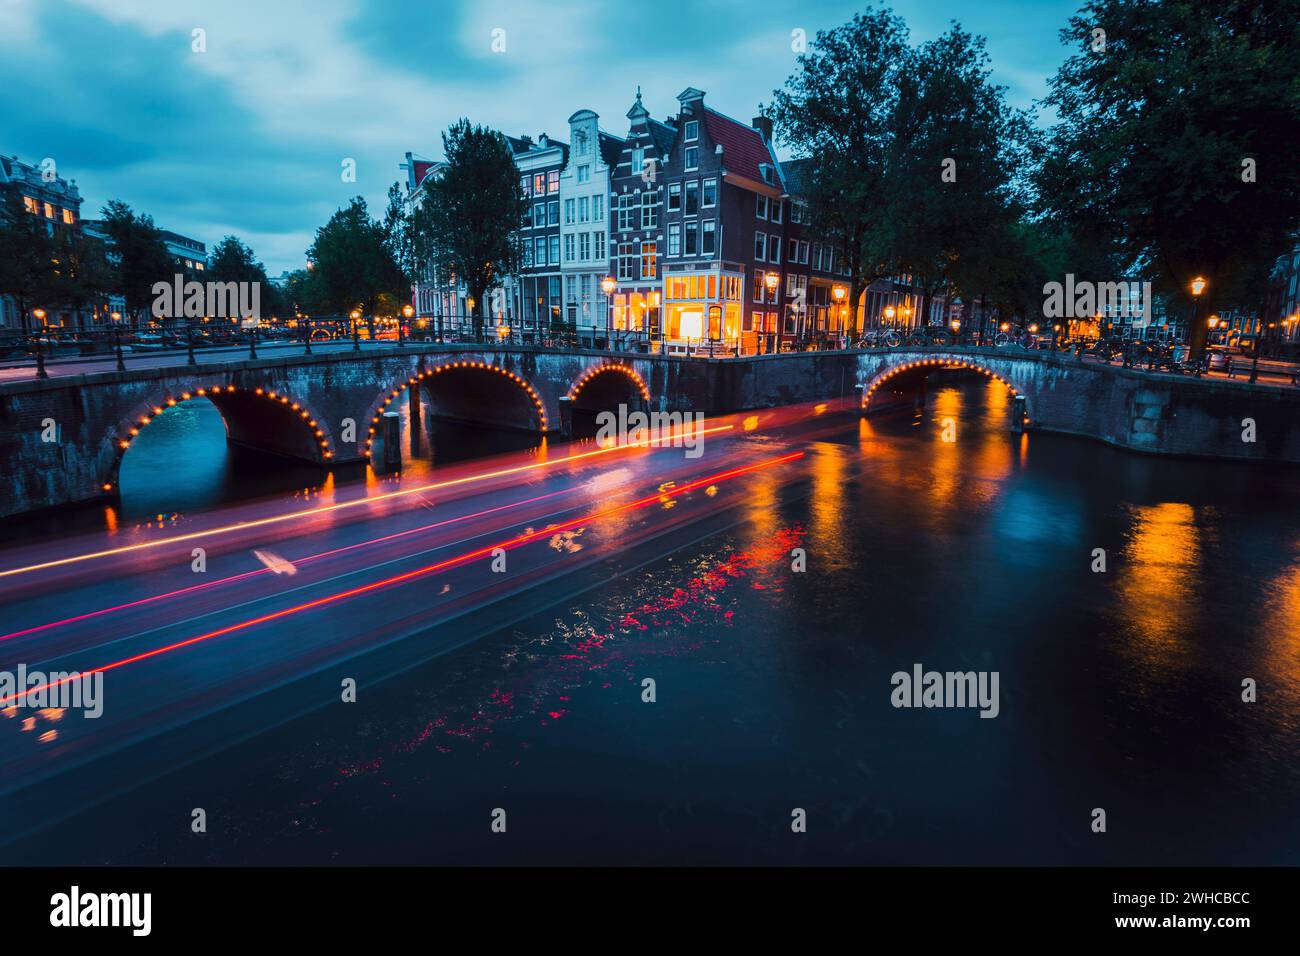 Des sentiers de lumière étonnants et des reflets sur l'eau sur les canaux Leidsegracht et Keizersgracht à Amsterdam le soir. Prise de vue longue exposition. concept romantique de voyage en ville. Banque D'Images